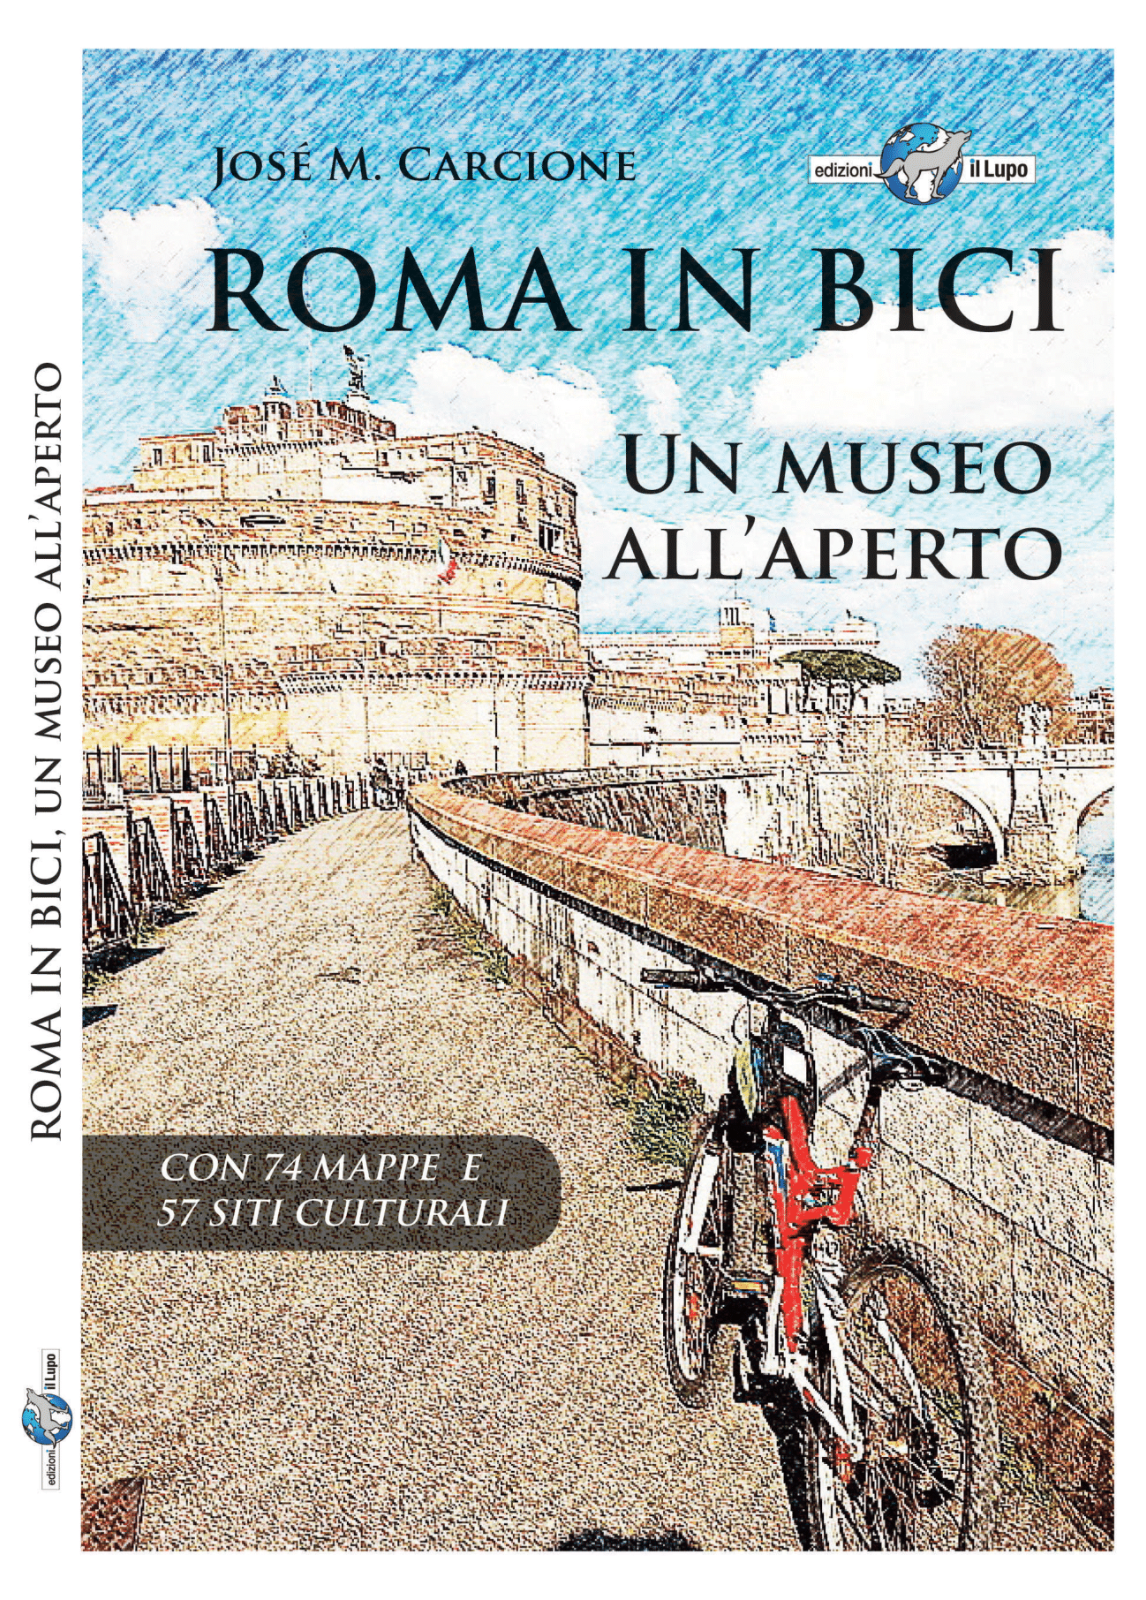  Roma in bici. Un museo alL'aperto di Jos? M. Carcione, 2022, Edizioni Il Lup